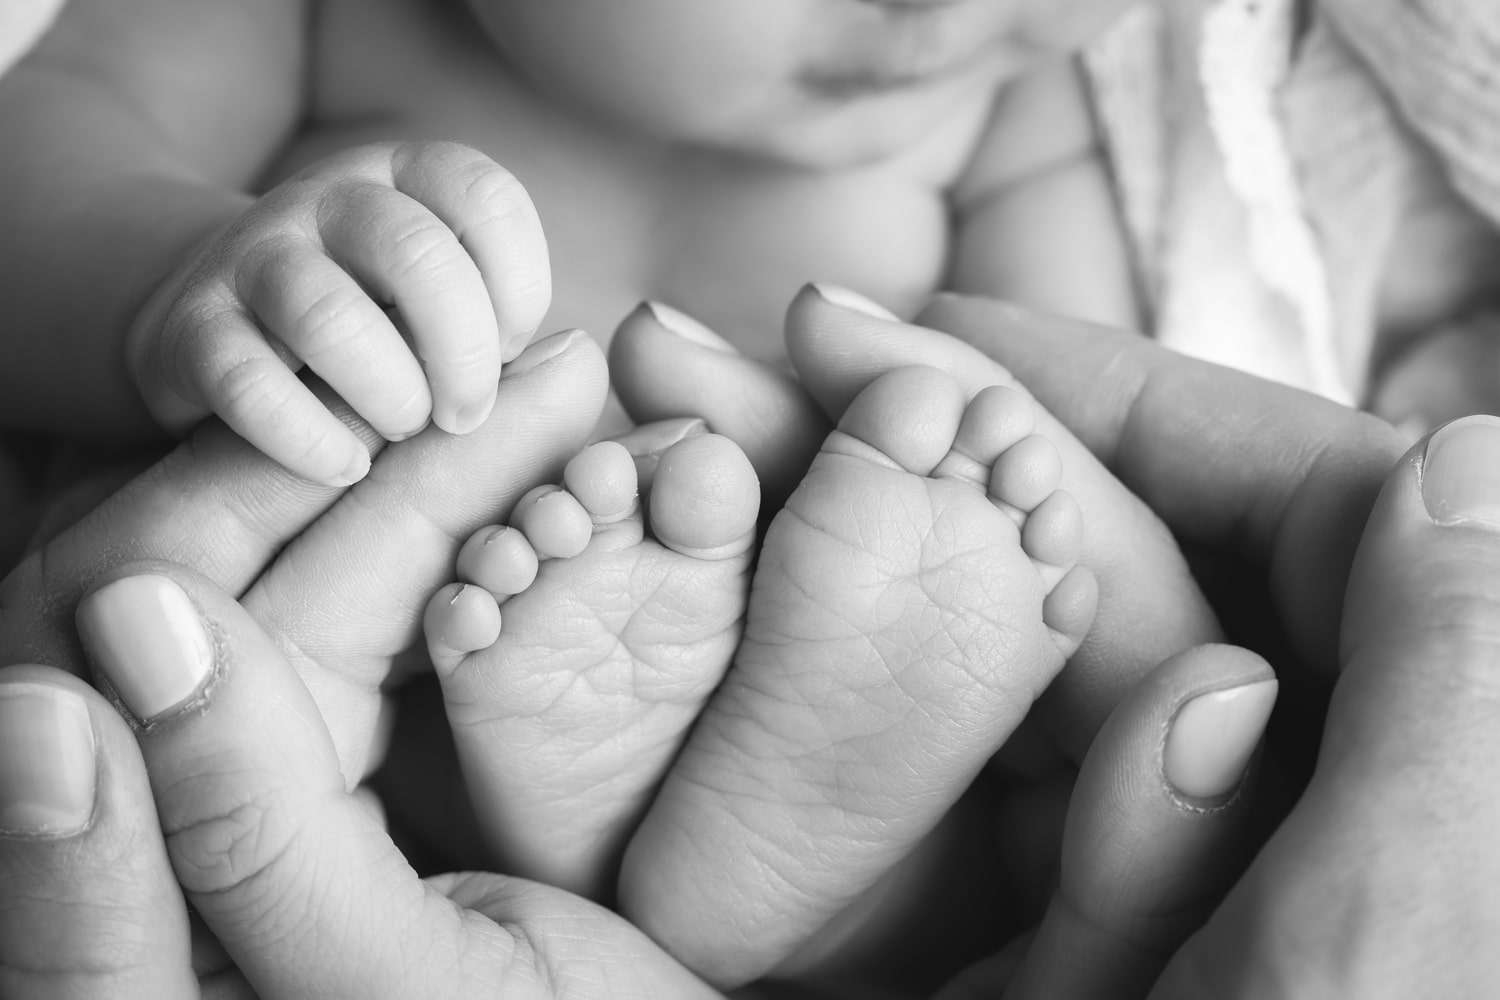 newborn photographer in rochester ny captures macros shot of newborn baby girl's feet in her parents' hands